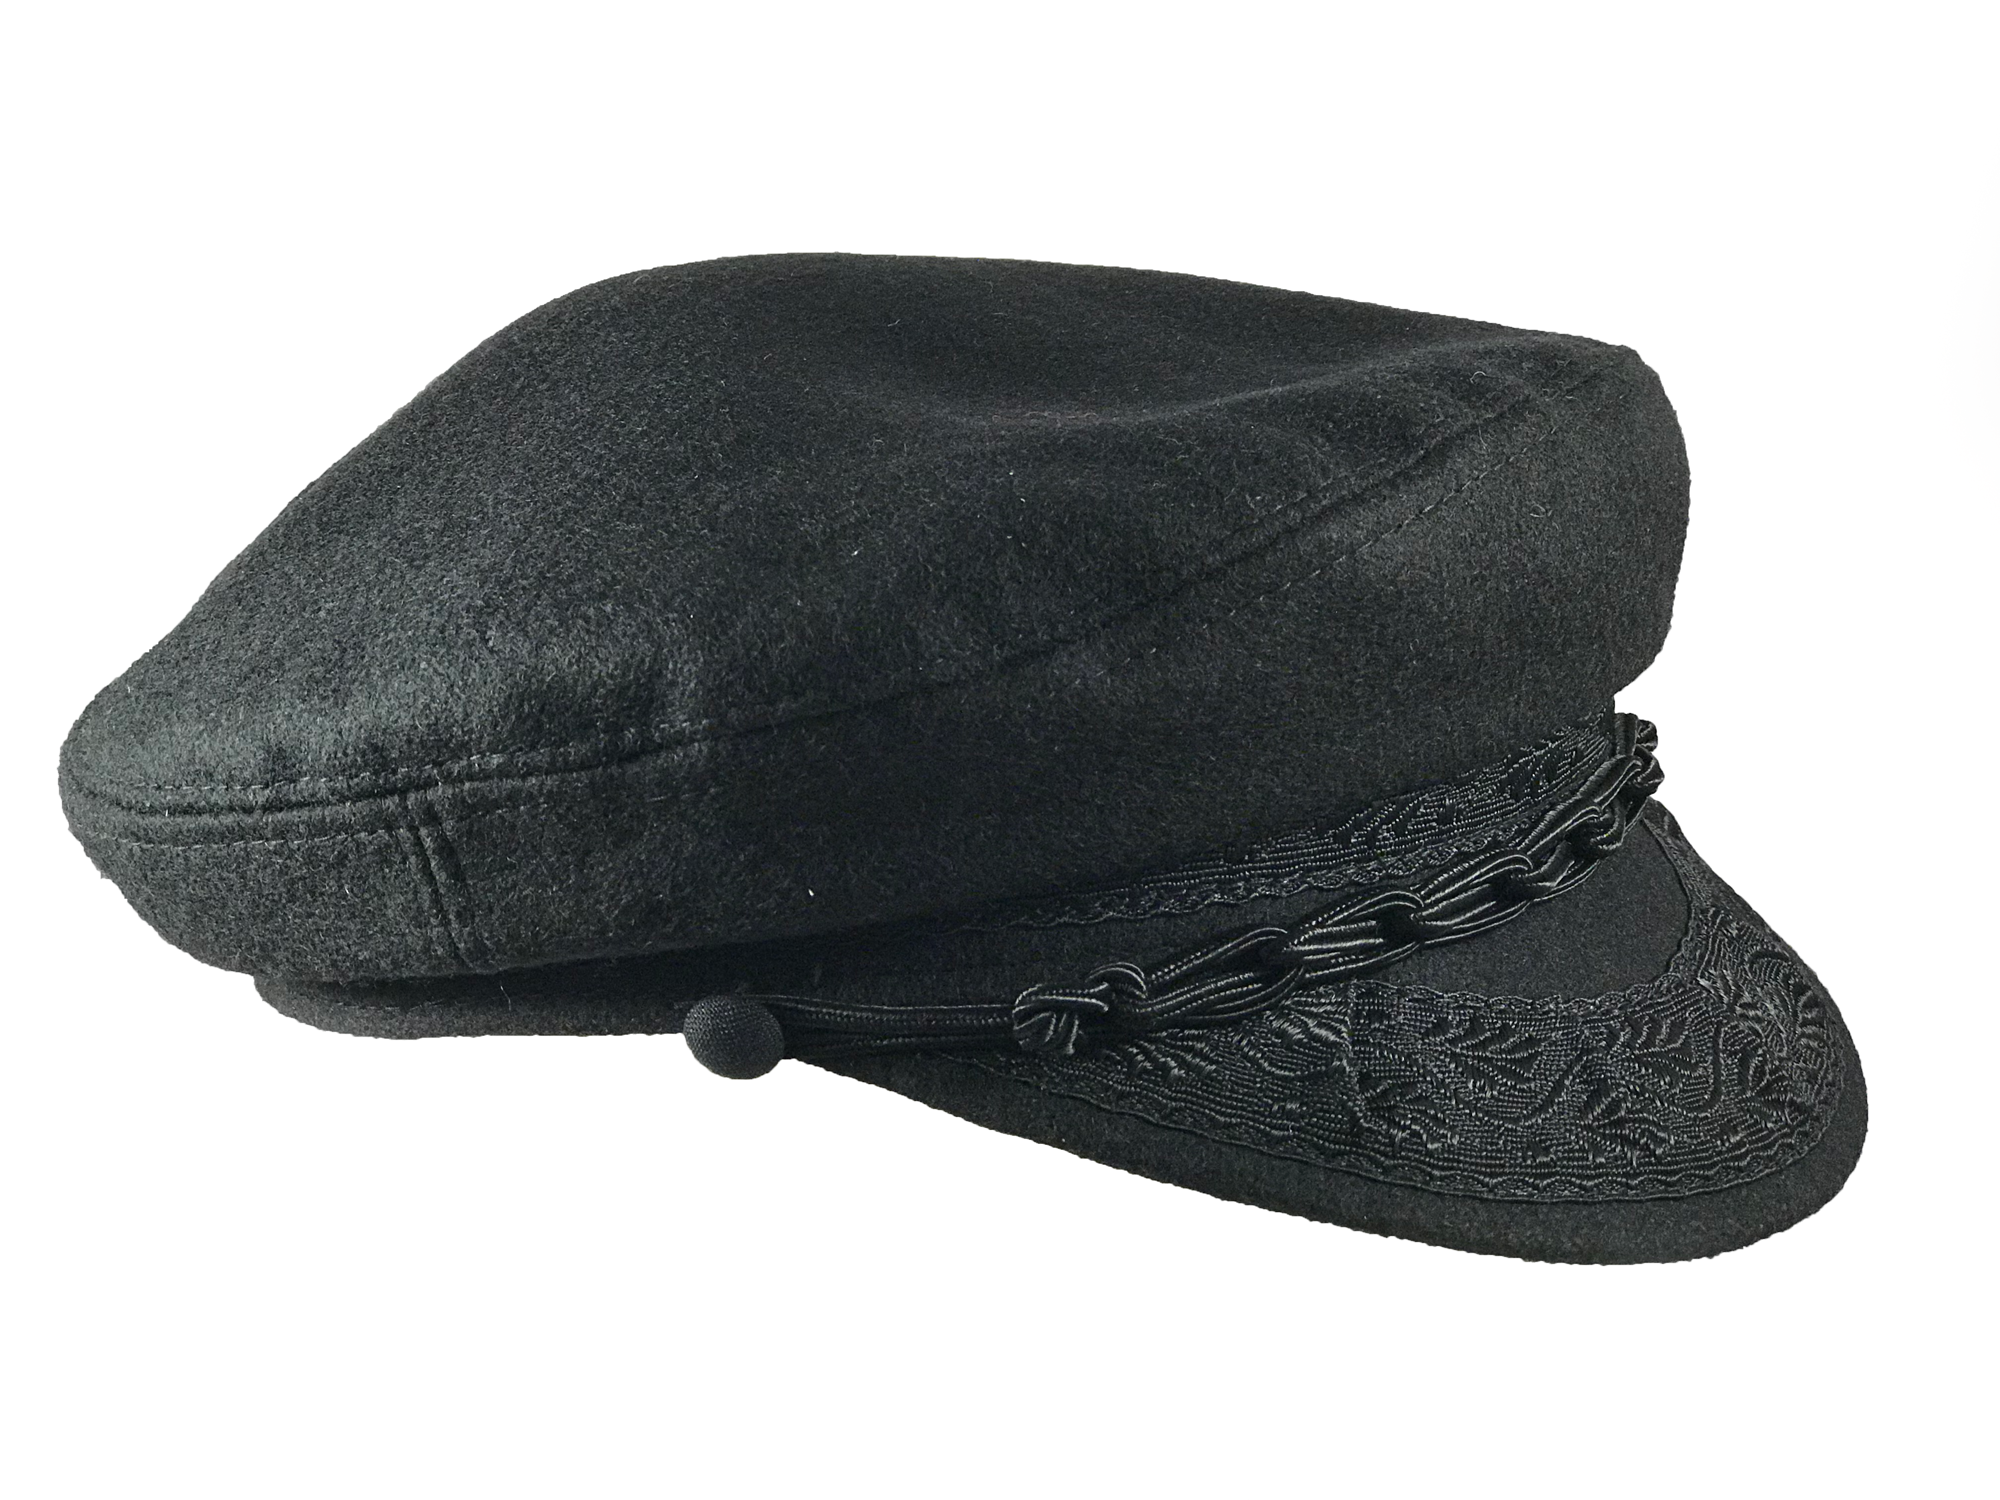 Greek Fisherman's Cap - Cotton / Black – Golden Fleece Designs Inc.